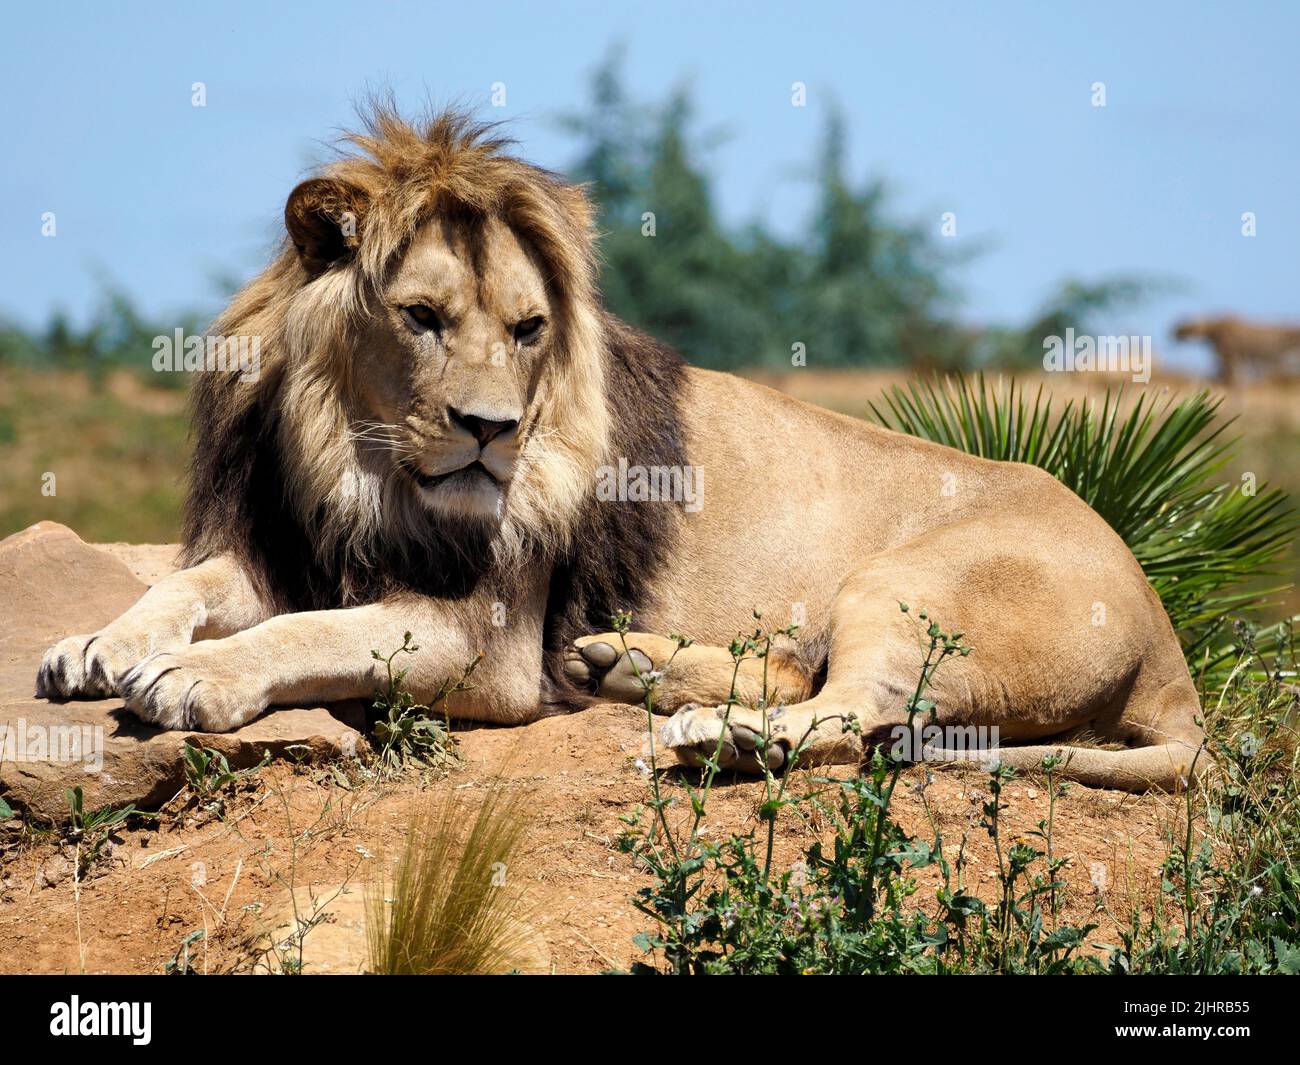 León (Panthera leo) tumbado en el suelo entre la vegetación Foto de stock